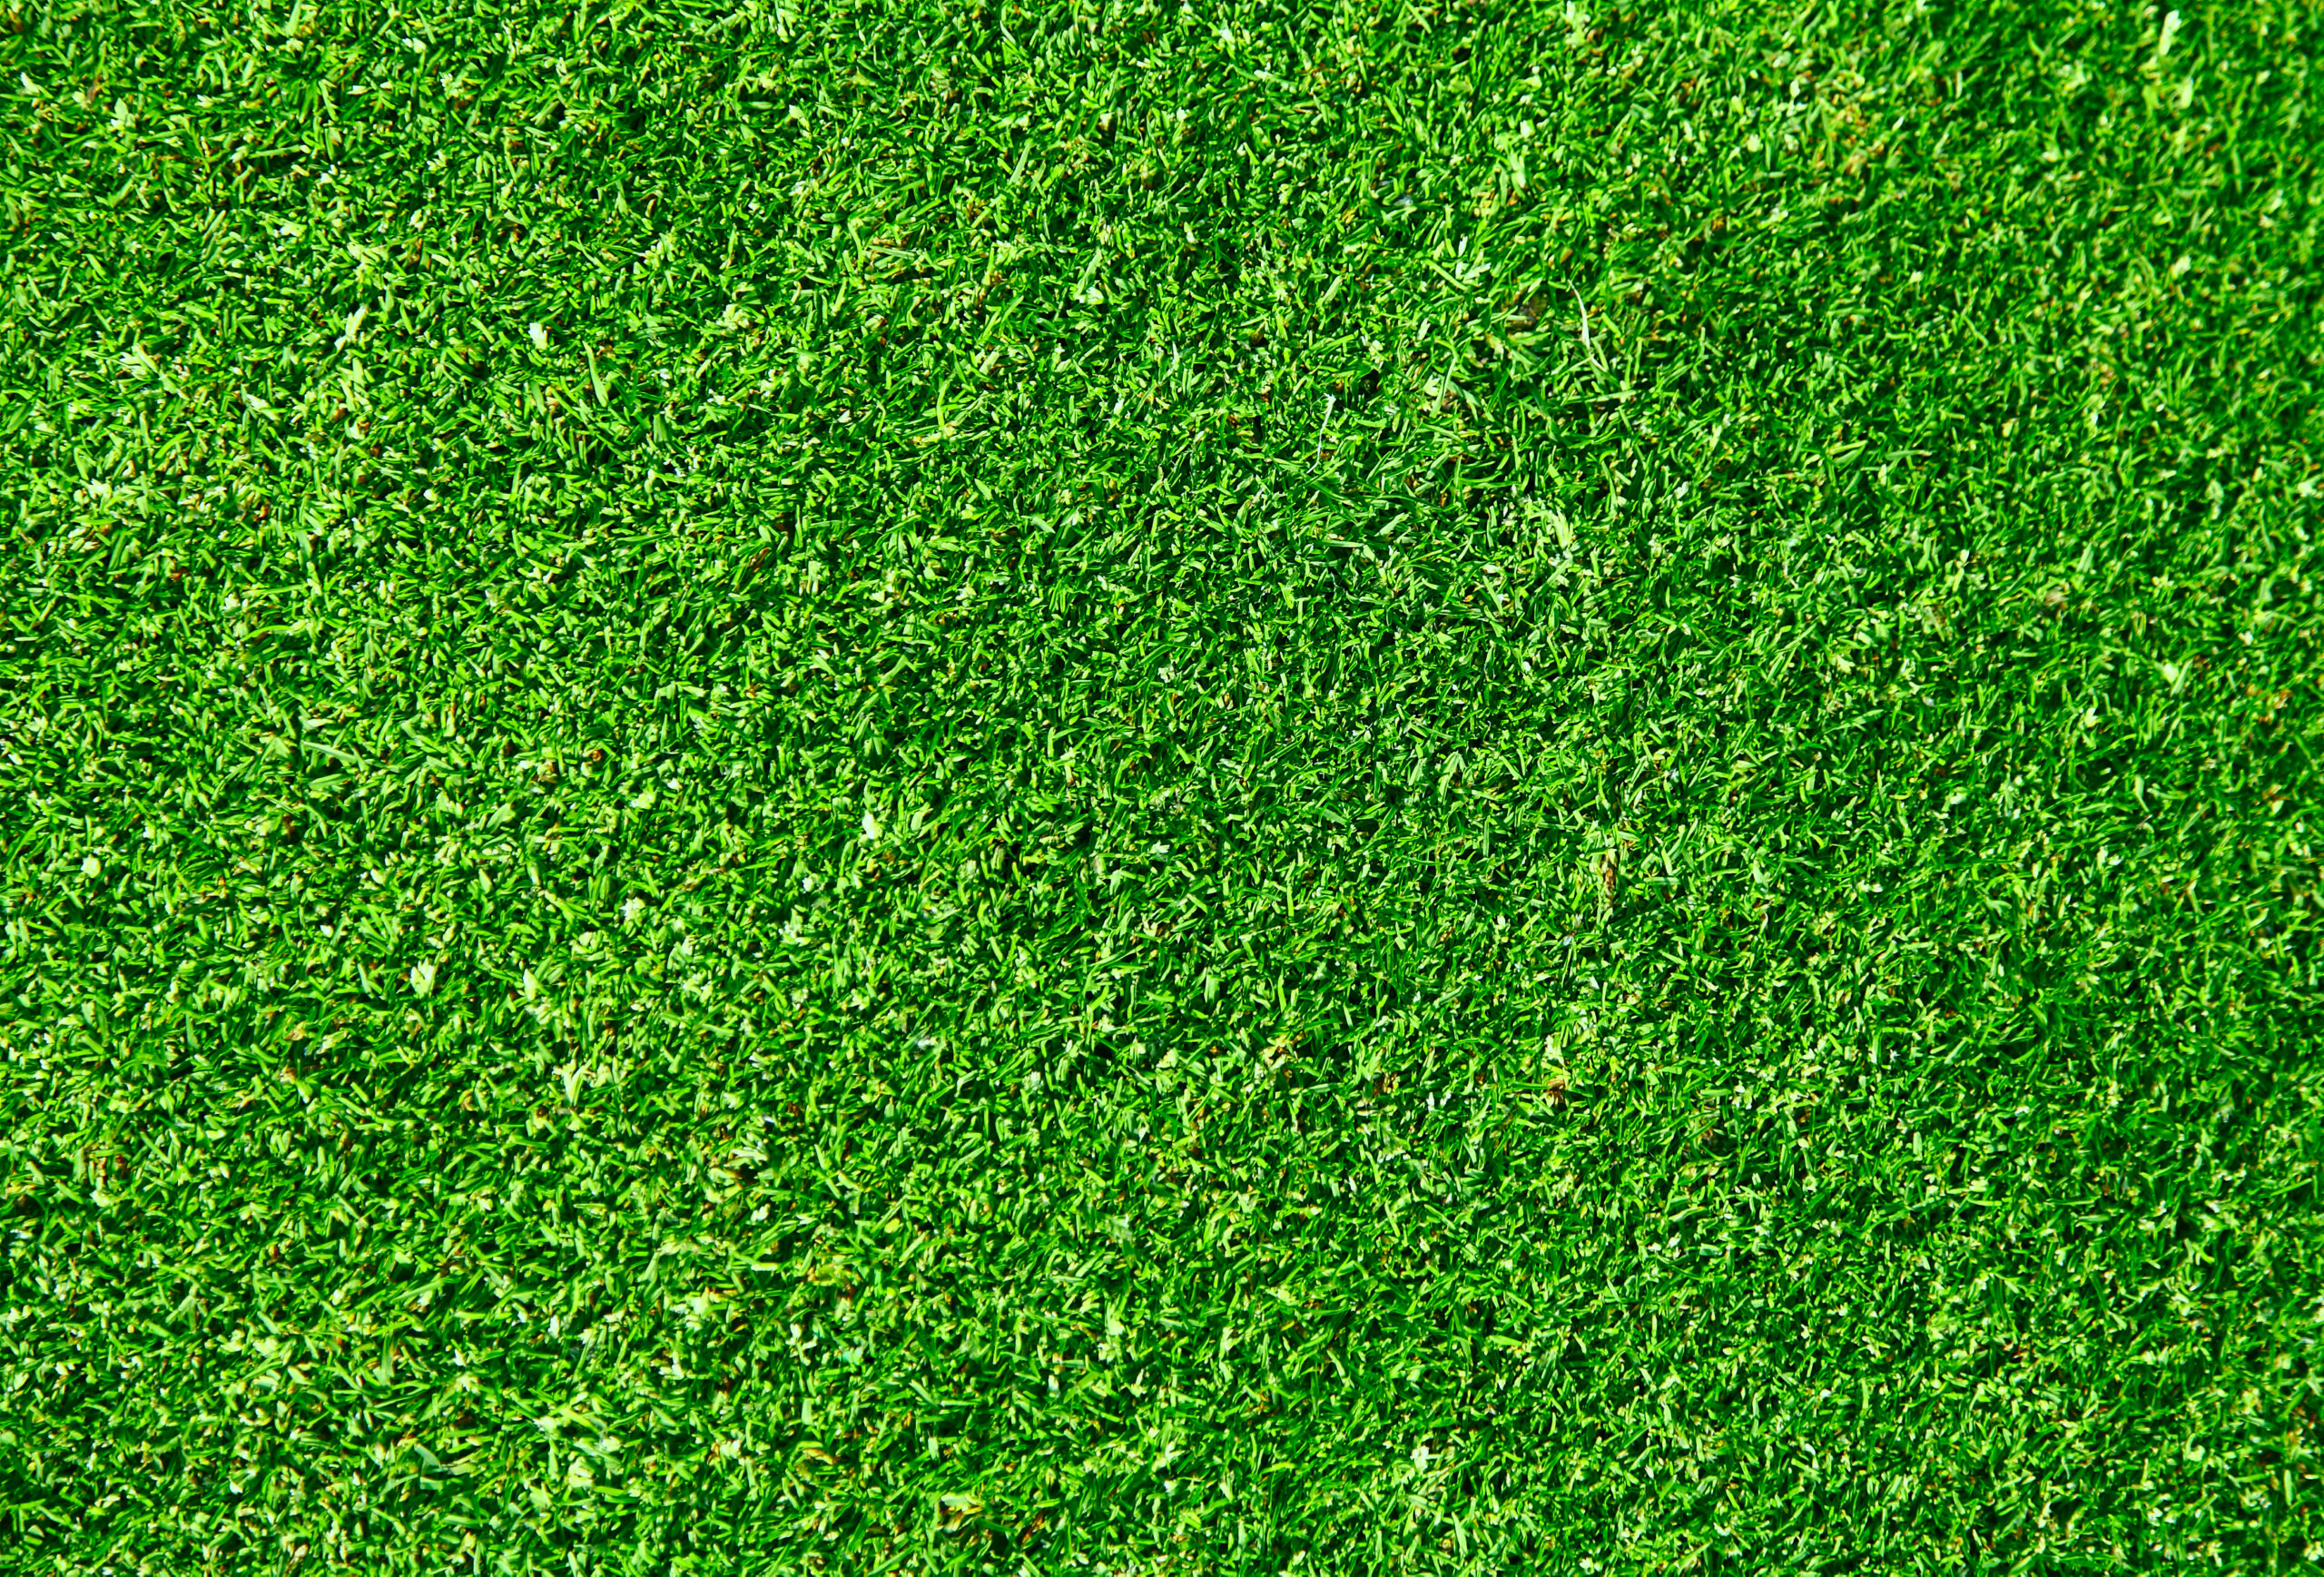 grass textured wallpaper 2017 - Grasscloth Wallpaper